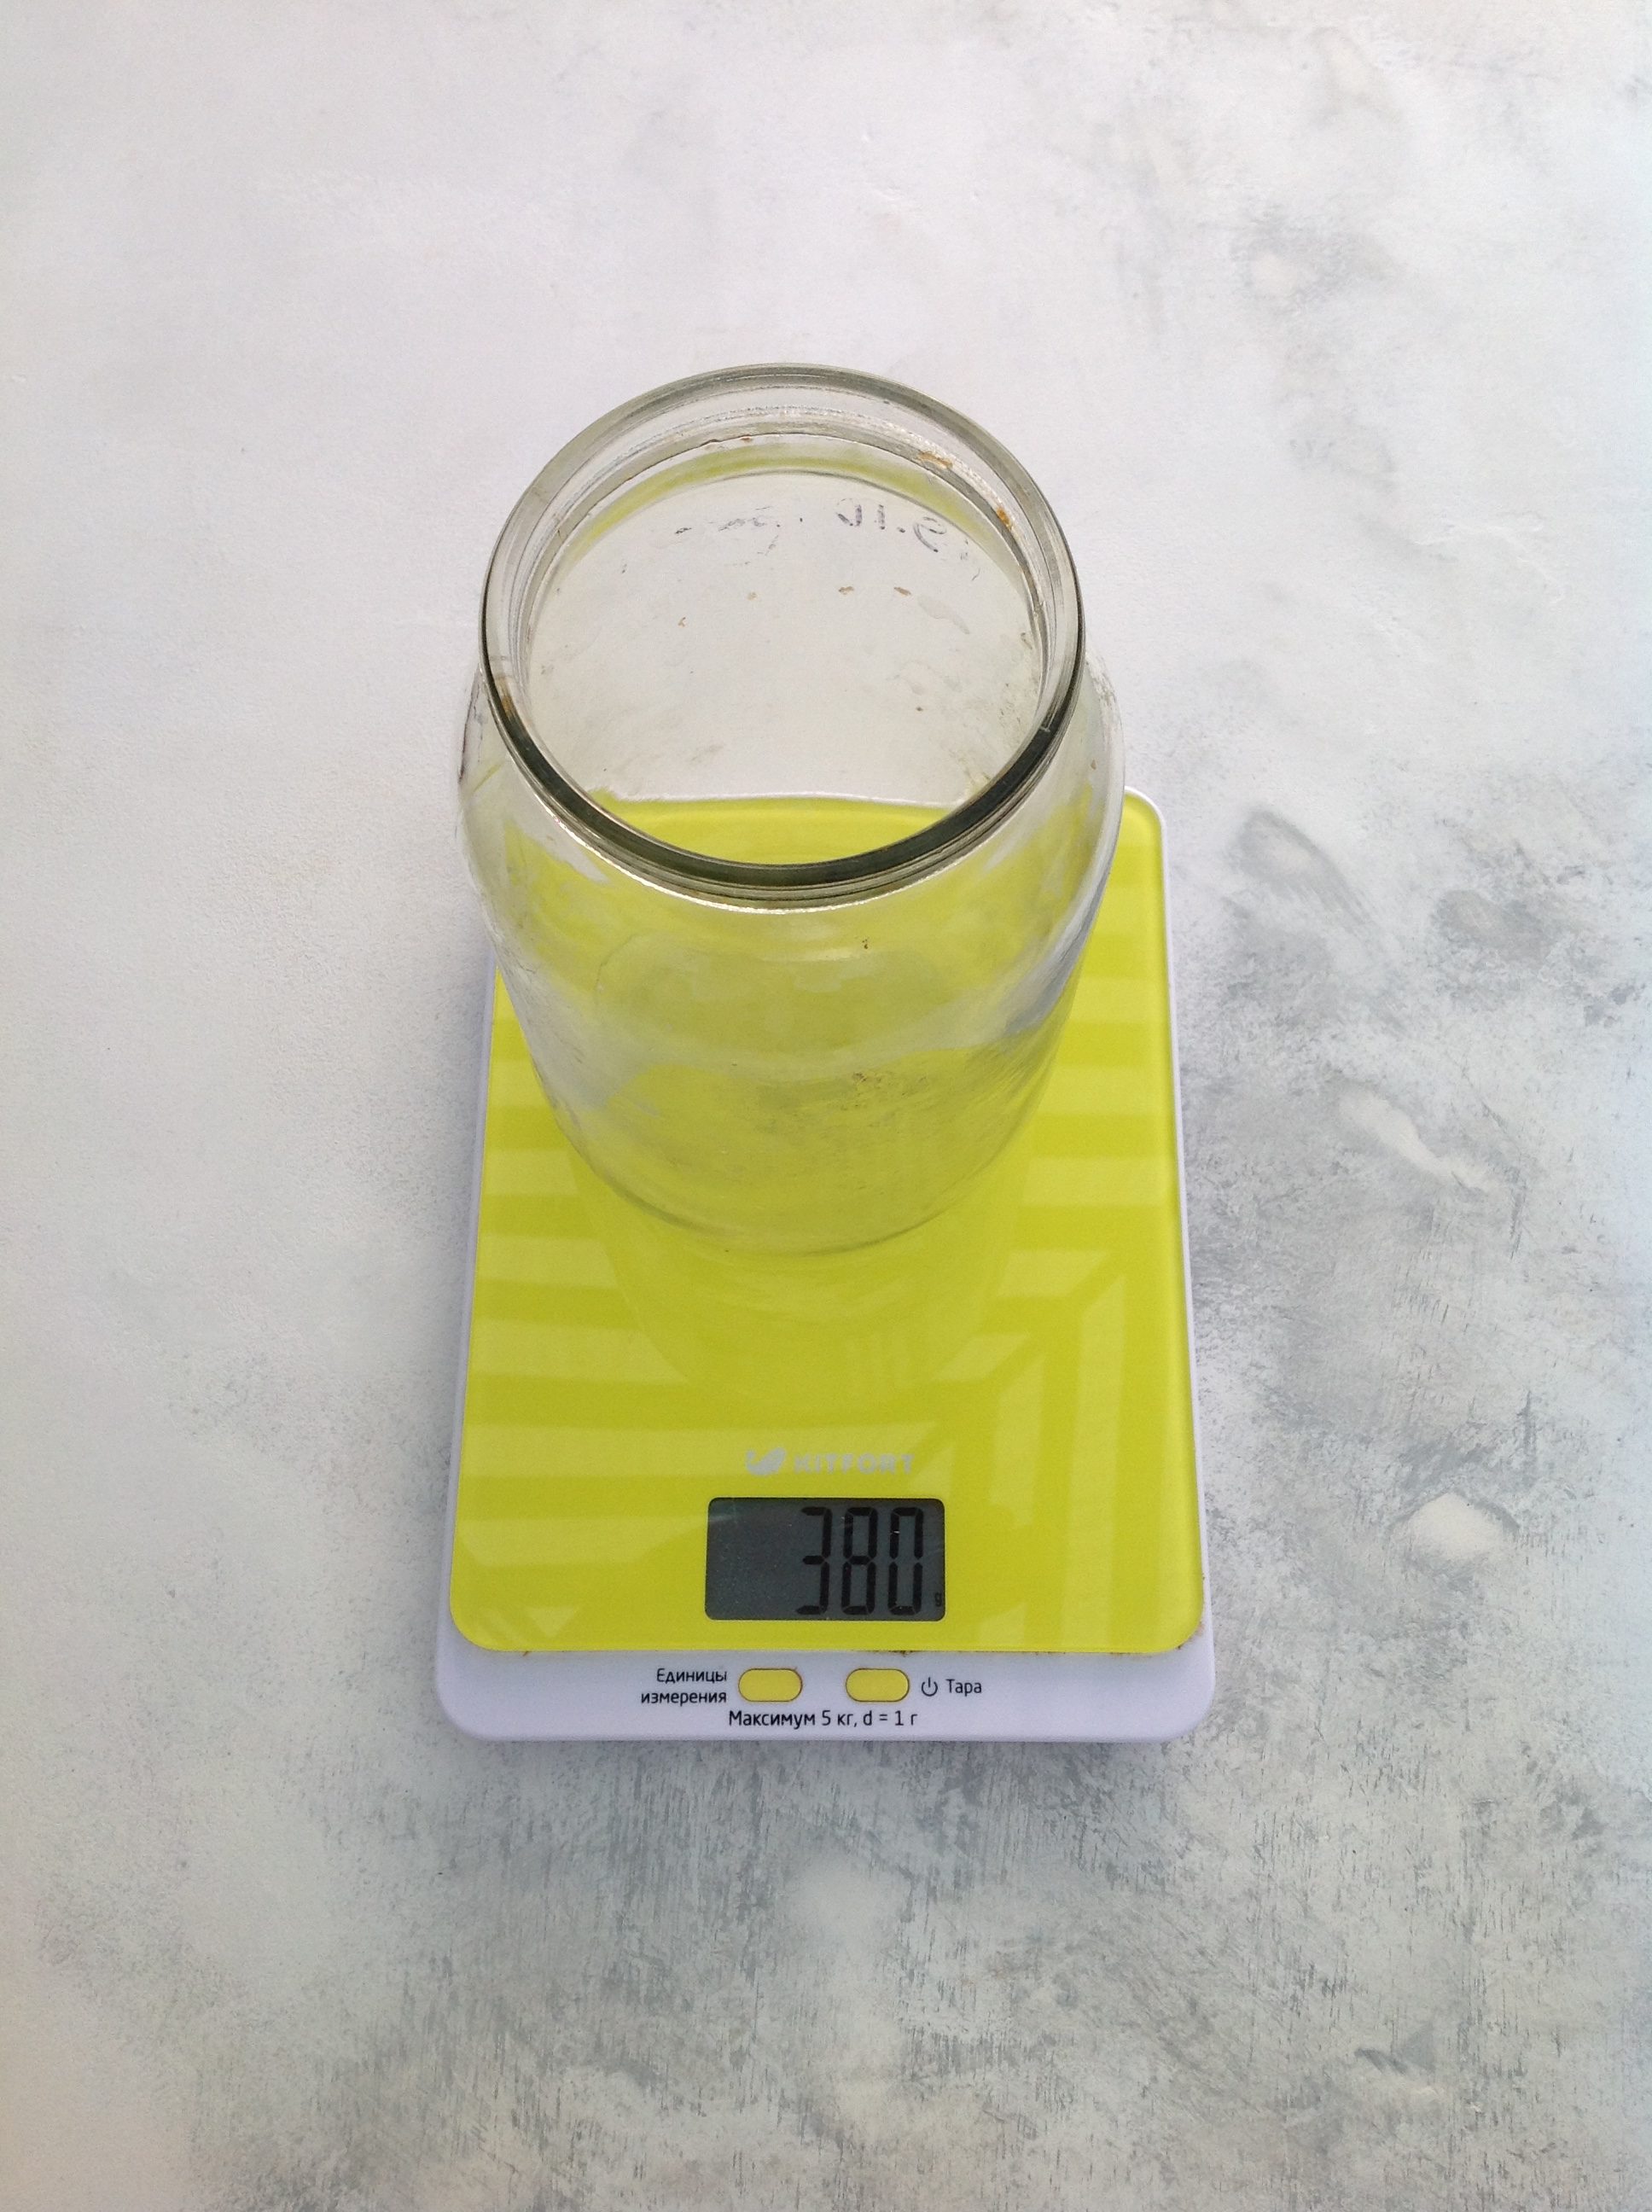 How much does a liter jar (1 liter) weigh?